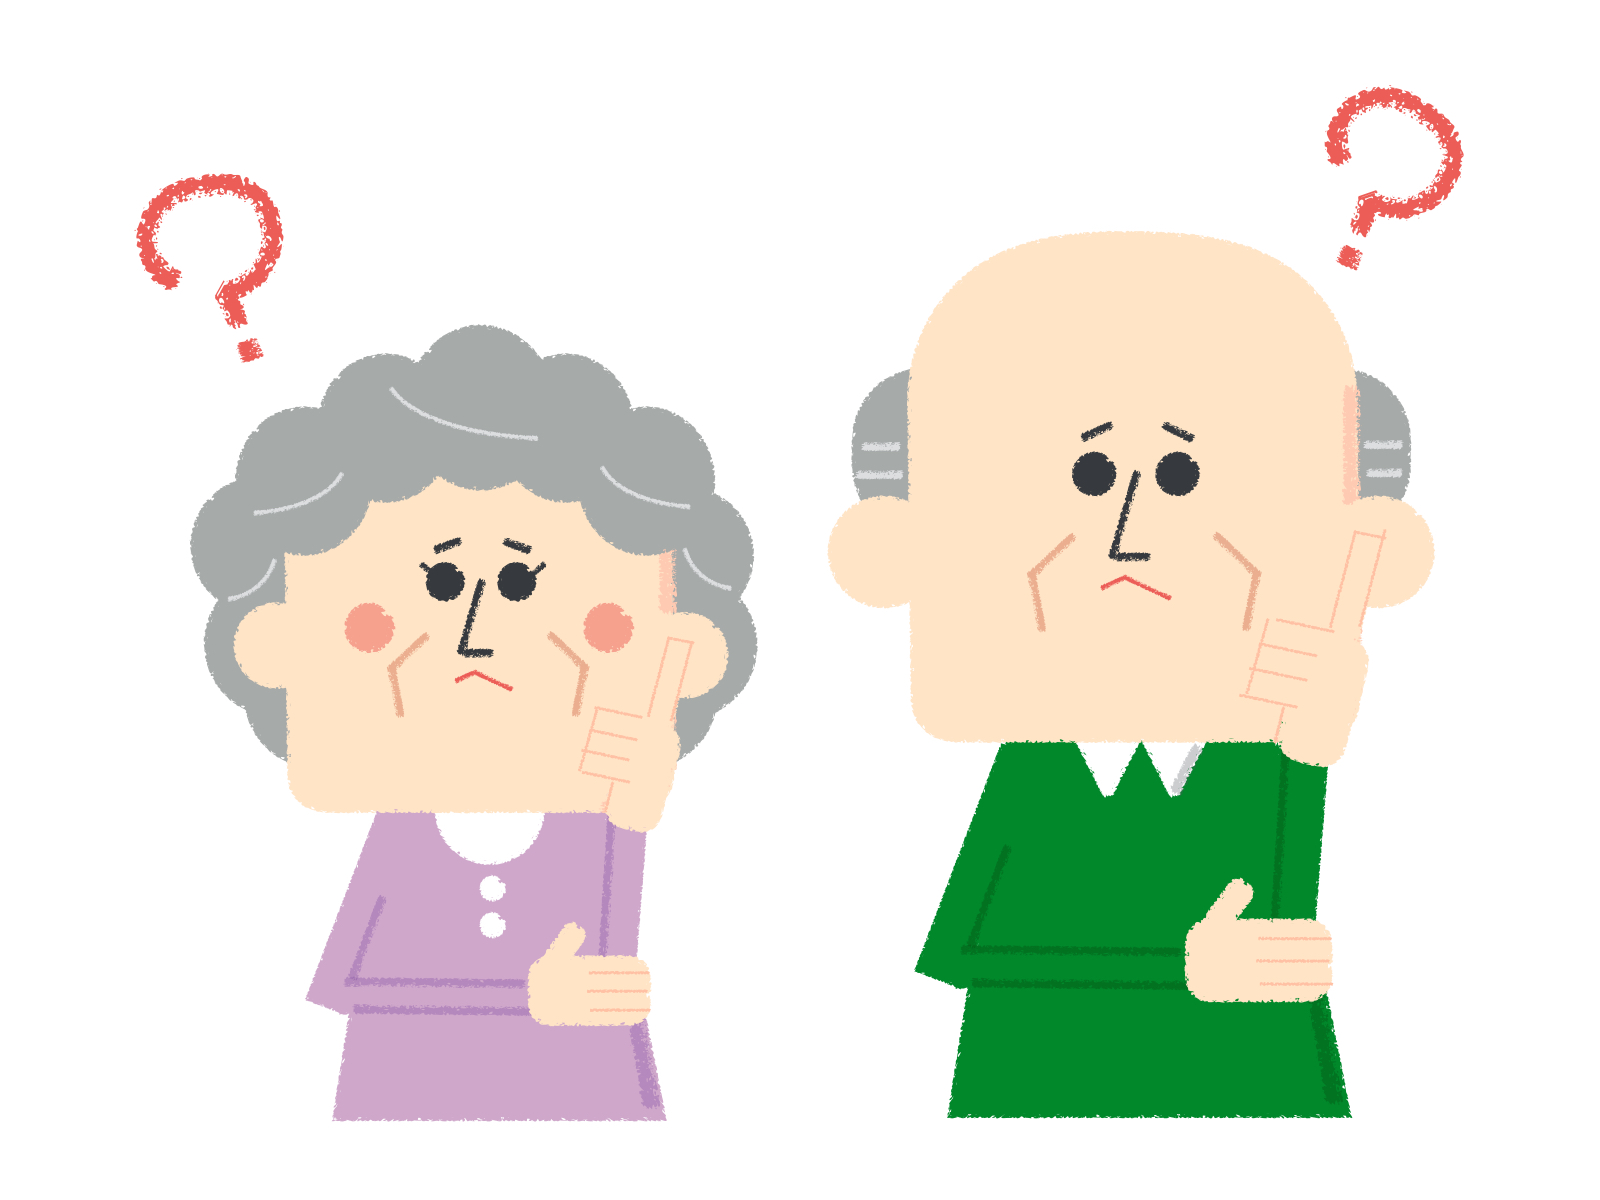 ひらがな虫食いクイズ 全30問 高齢者向け 難問ぞろいの問題で脳トレ みんなのお助け Navi 高齢者向けレク 脳トレクイズ紹介サイト